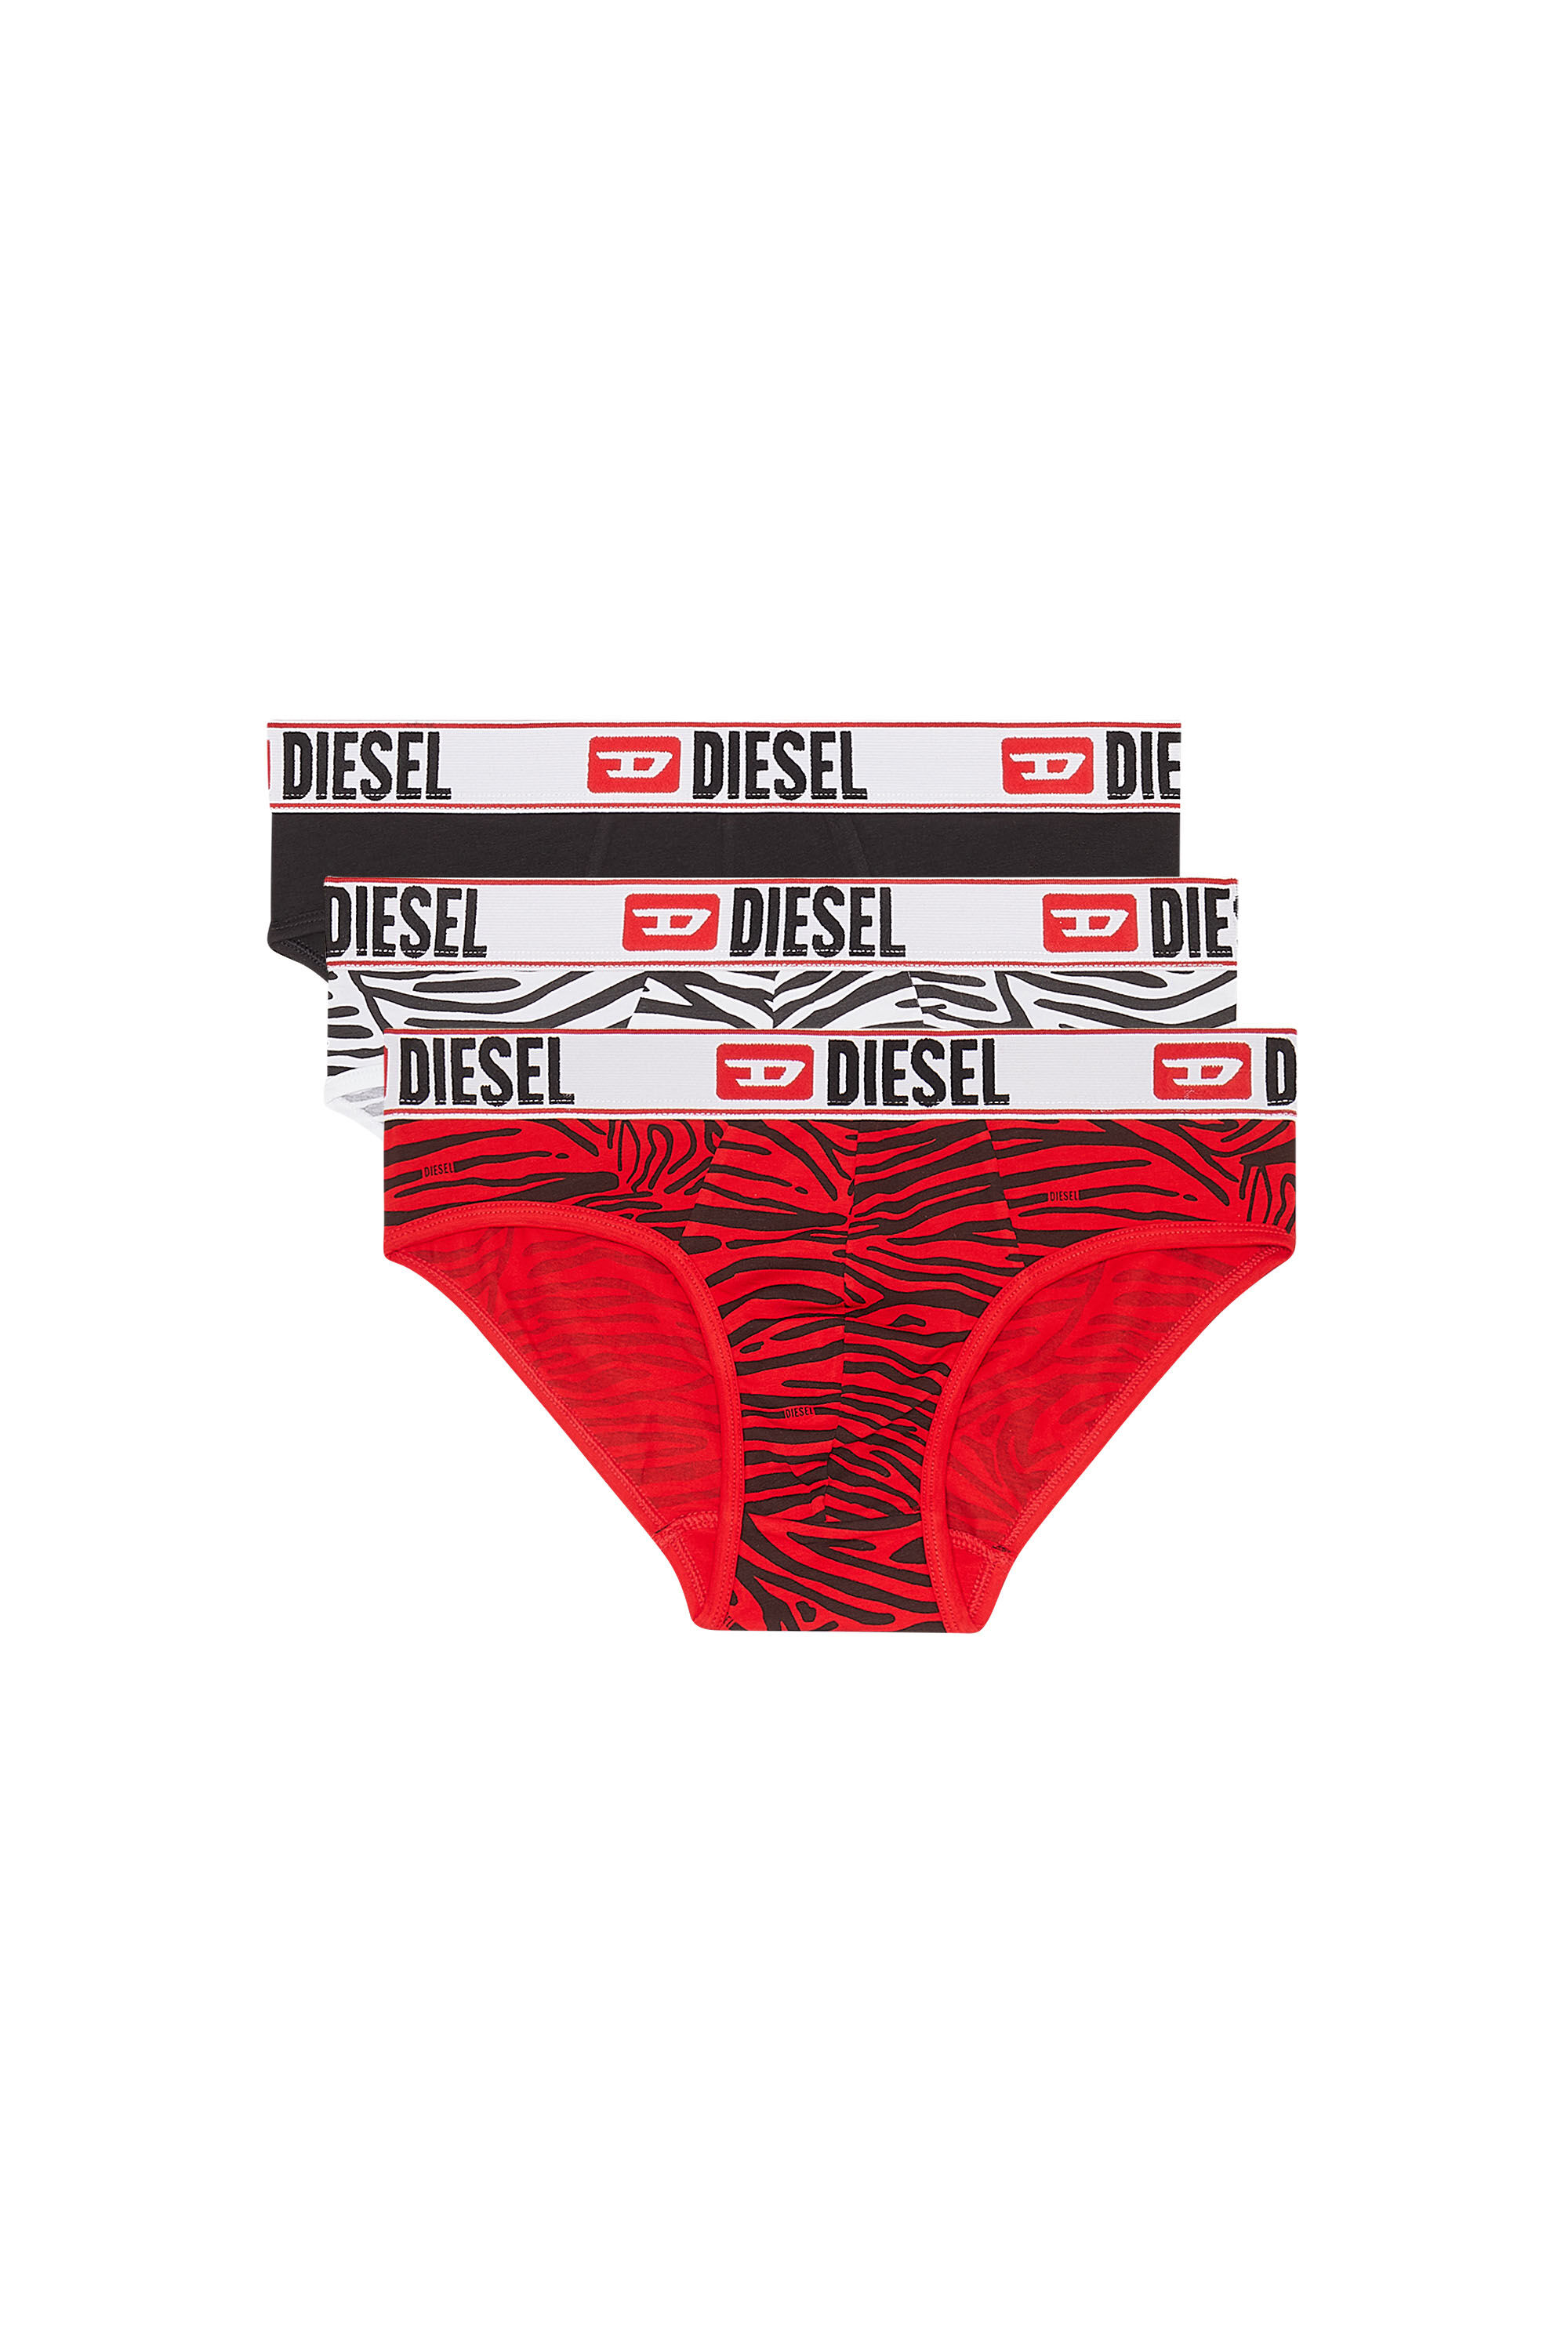 Diesel Underwear for Men